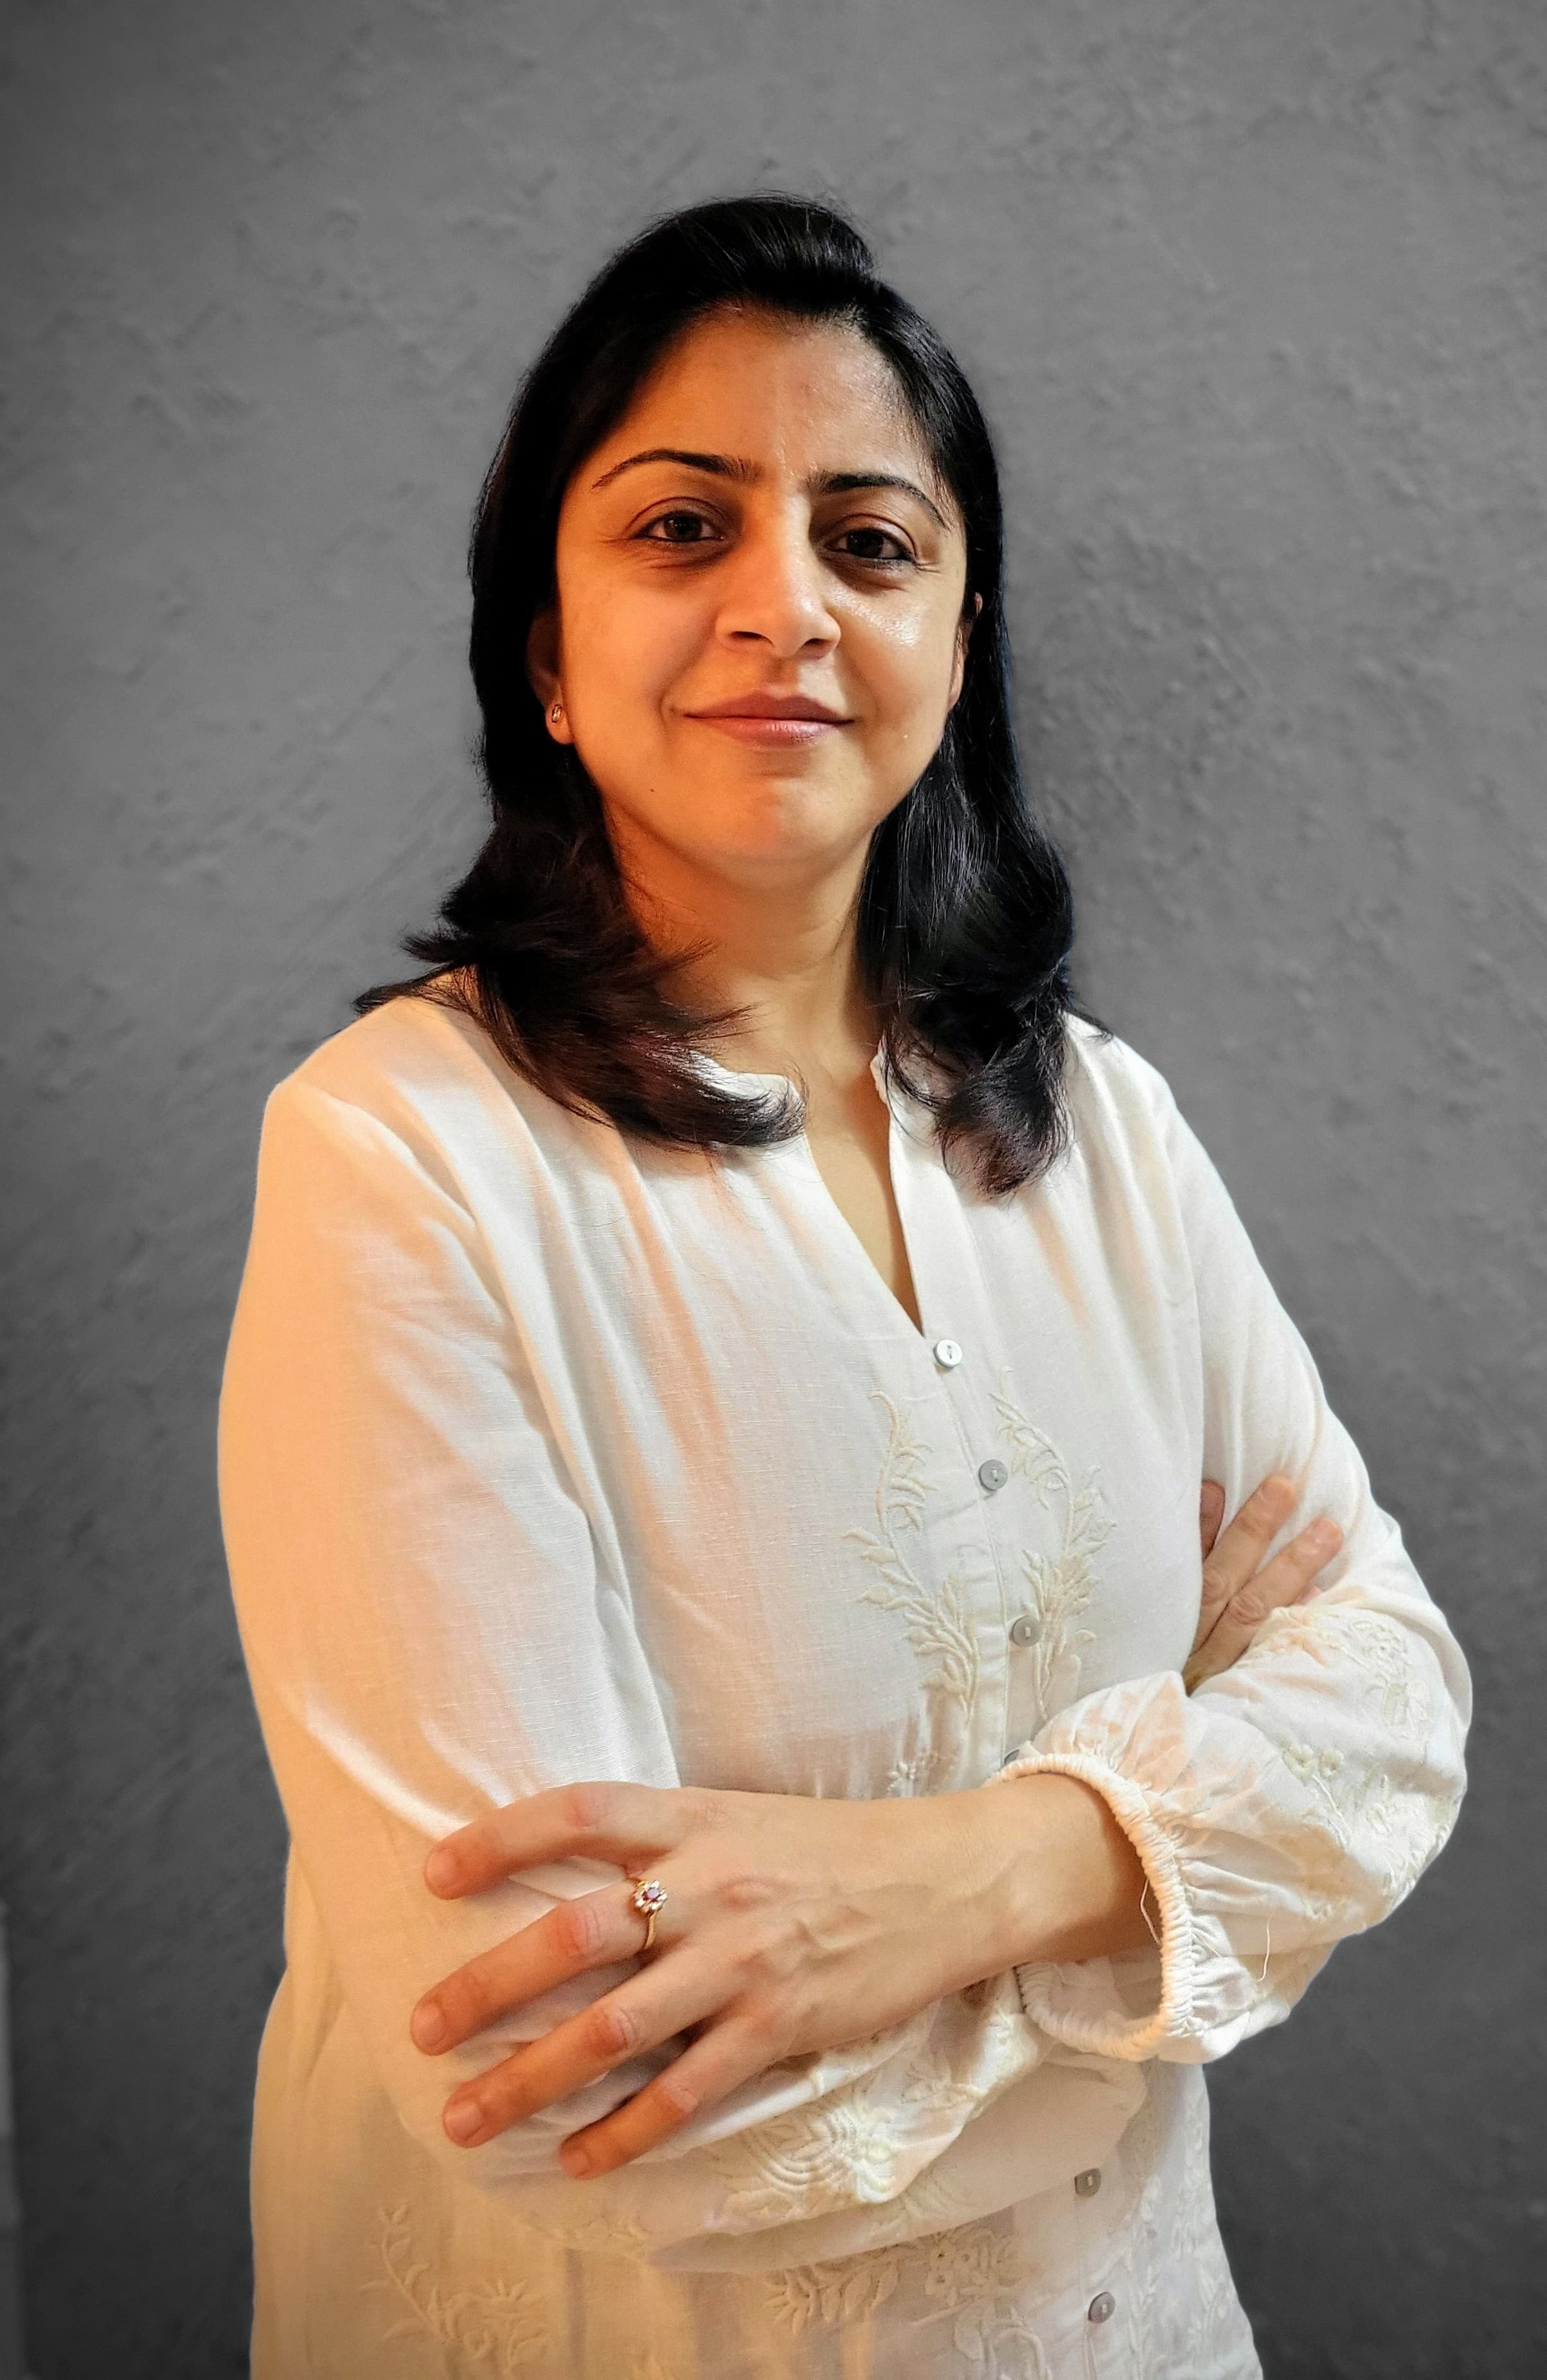 Dr. Nitika Jain